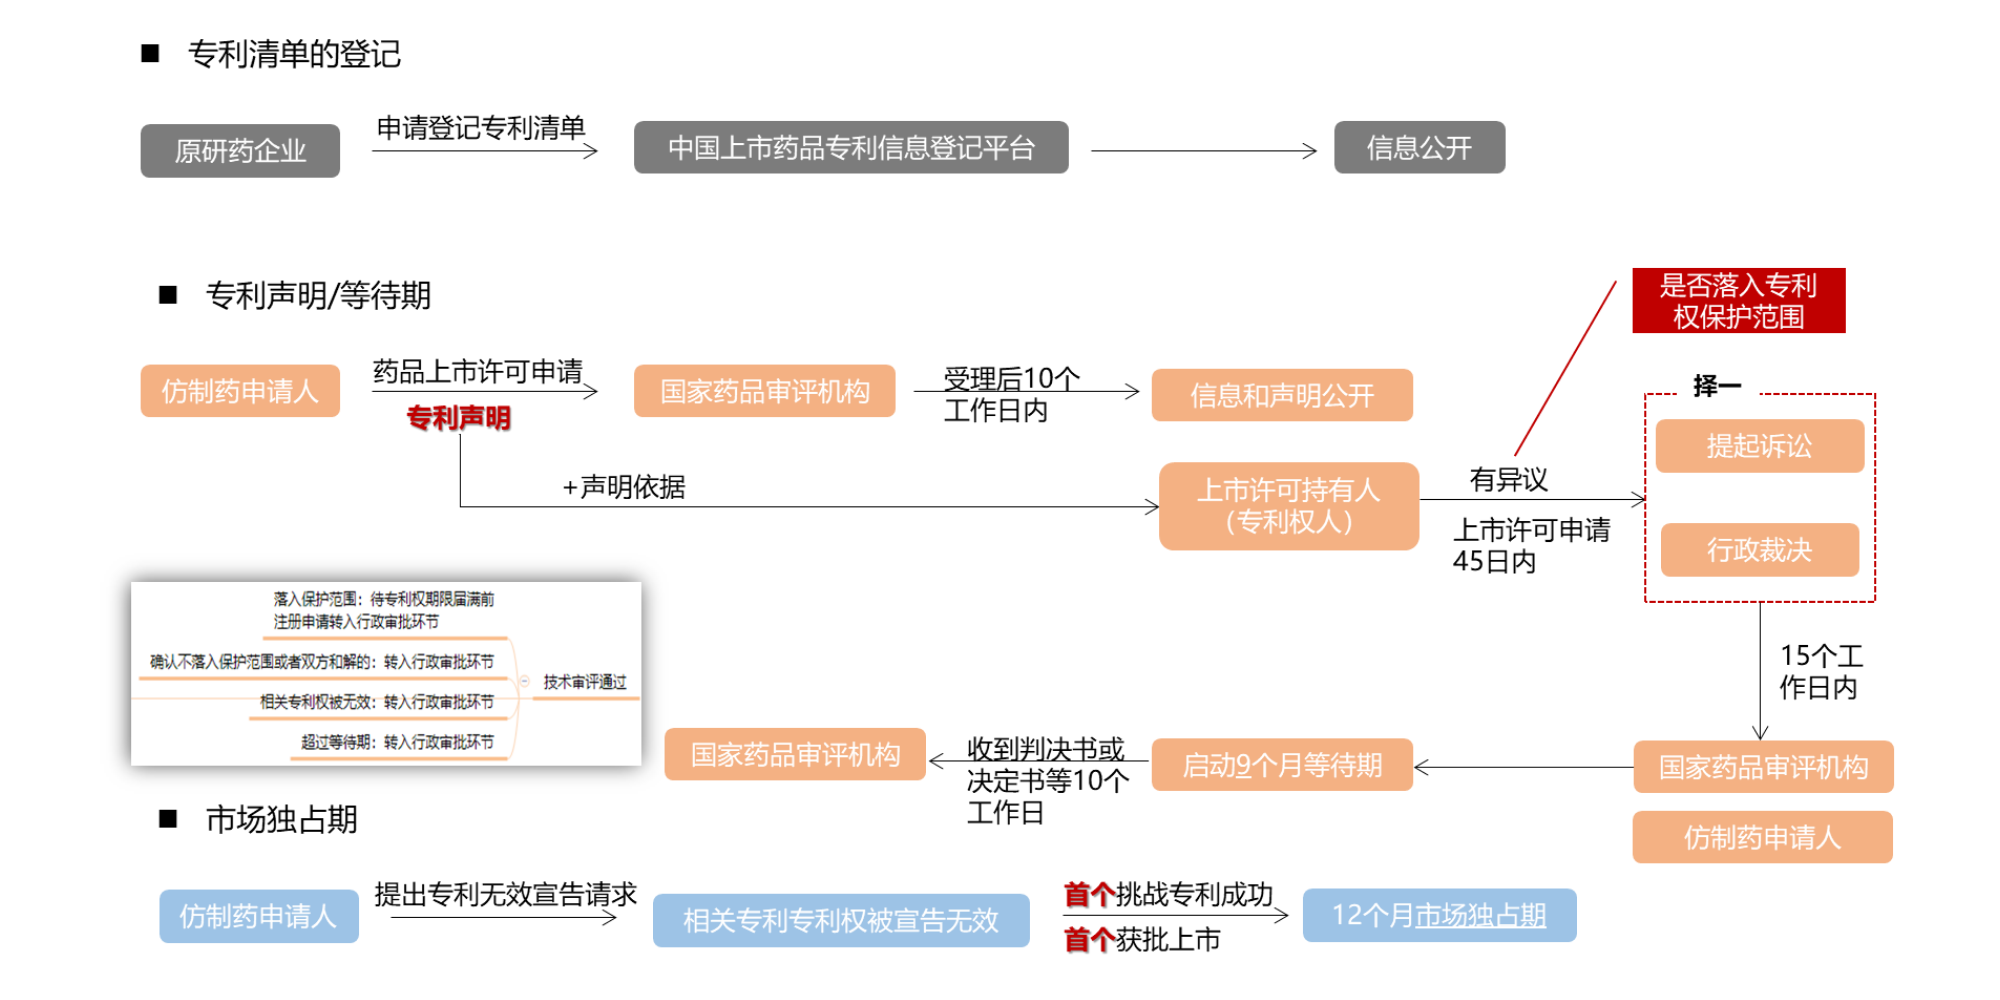 刘麒：多方位解读药品专利链接制度